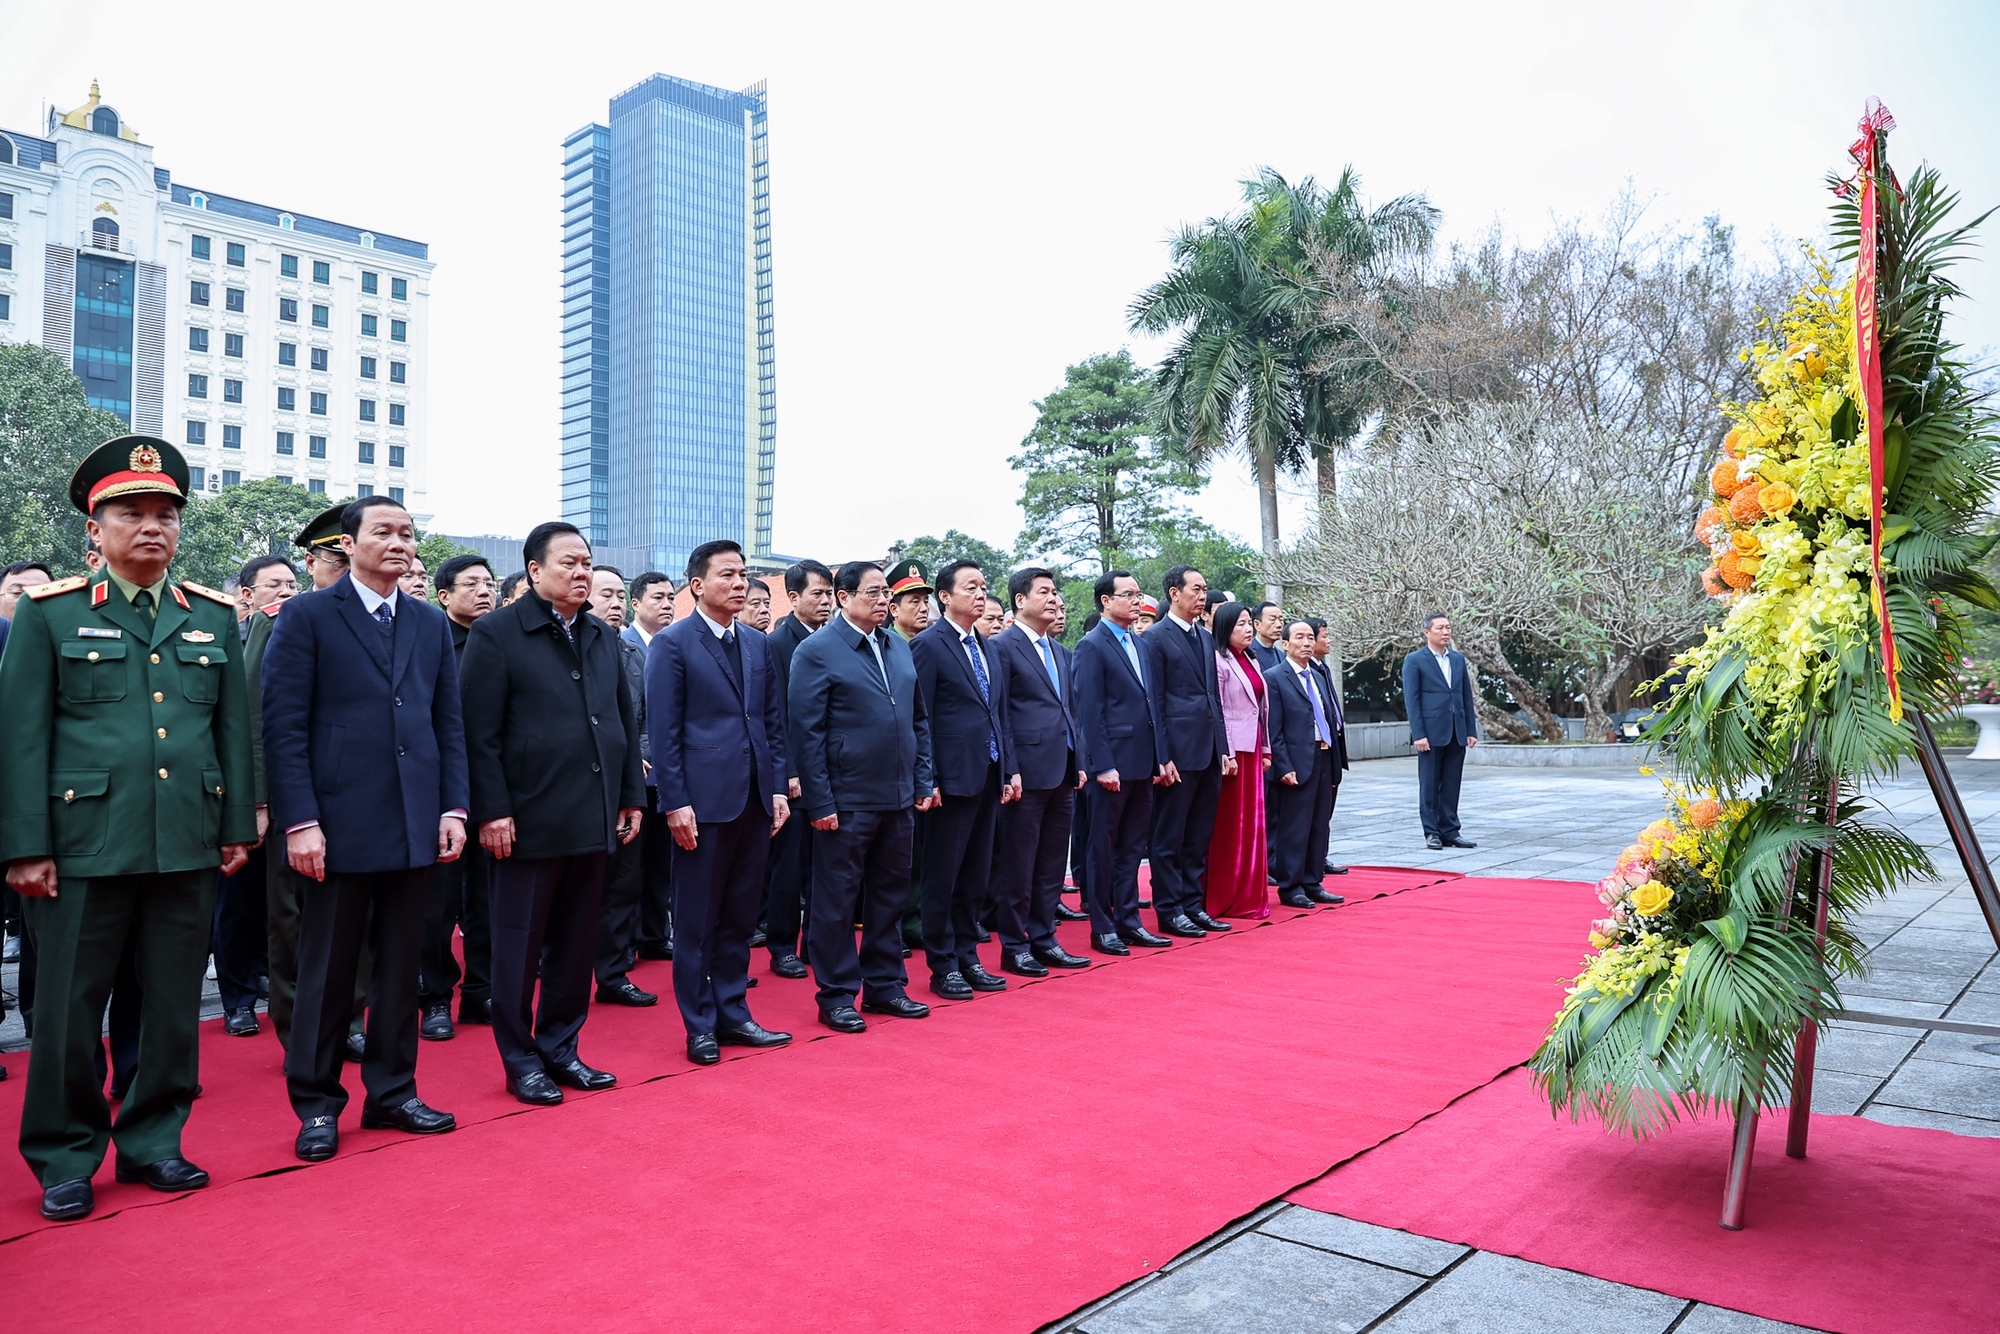 Thủ tướng Chính phủ và đoàn công tác dâng hương, dâng hoa tưởng nhớ công ơn Chủ tịch Hồ Chí Minh tại Khu văn hóa tưởng niệm Chủ tịch Hồ Chí Minh ở thành phố Thanh Hóa - Ảnh: VGP/Nhật Bắc